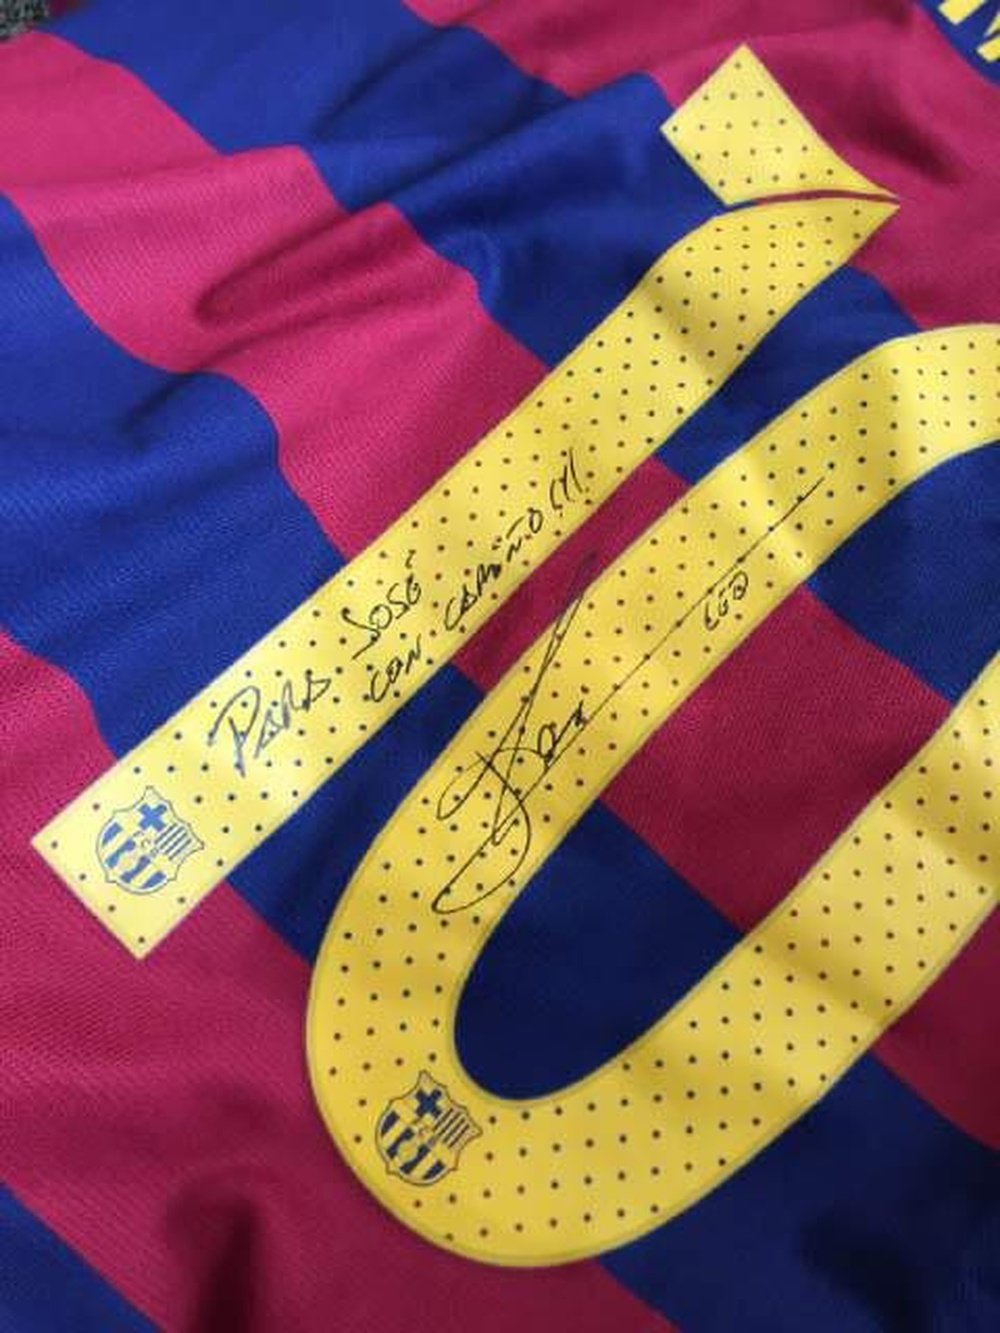 Esta es la camiseta que Messi le ha regalado a José Mourinho Jr. Twitter.